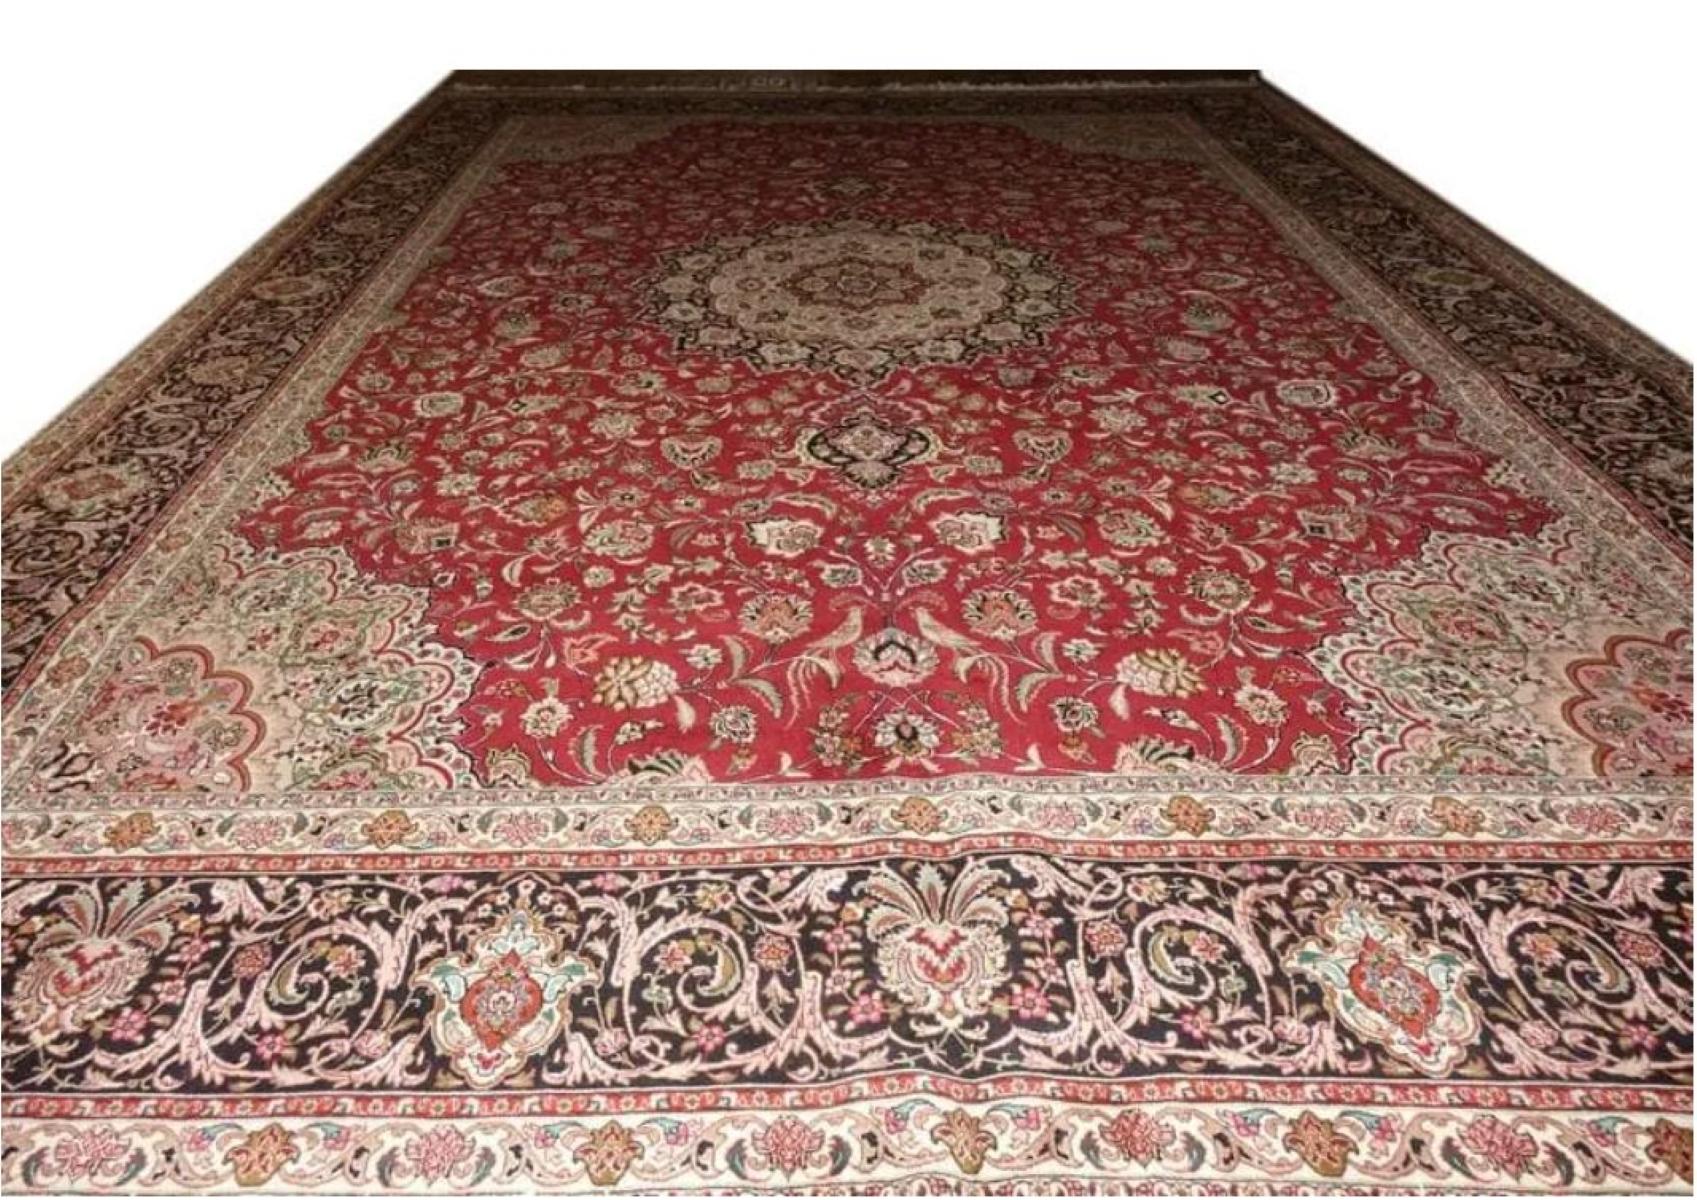 Très beau tapis persan Tabriz 400 noeuds par pouce, Taille 10 x 13.3  Iran Tabriz  Laine et soie. Environ 7 500 000 nœuds noués à la main, un par un. Il faut 4 ans pour réaliser cette œuvre d'art.